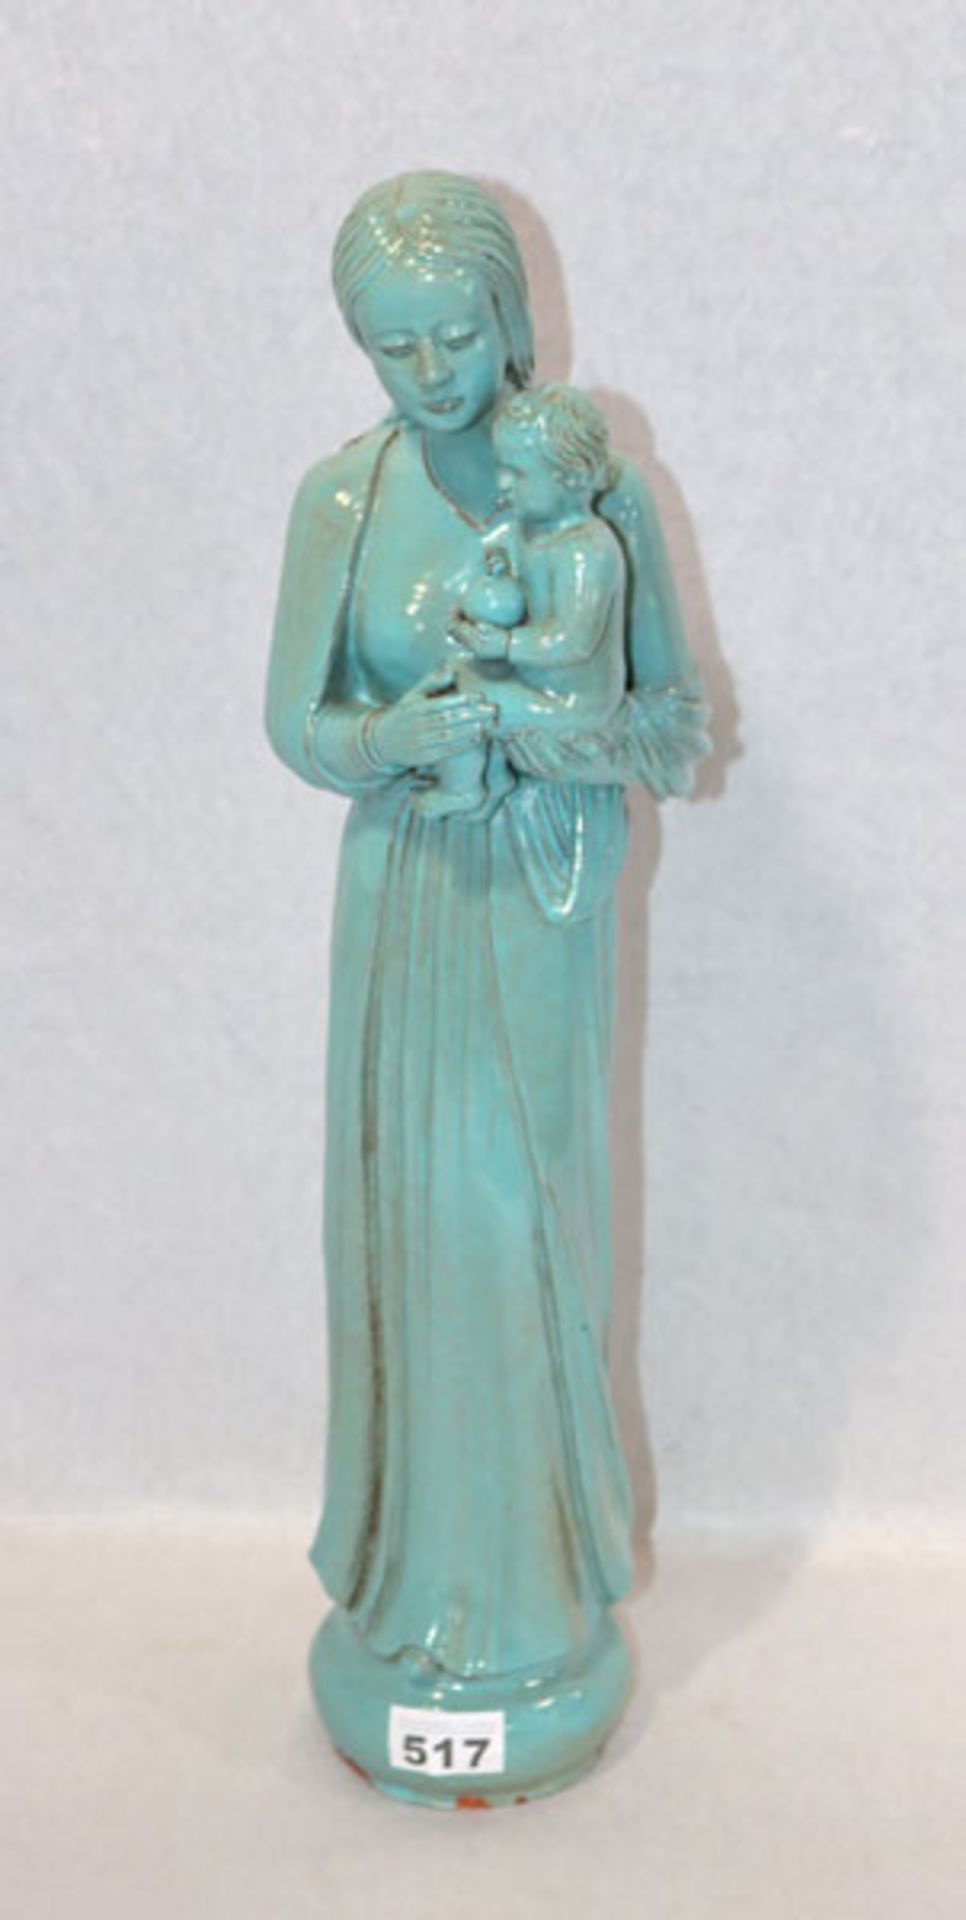 Ton Figurenskulptur 'Maria mit Kind', türkis glasiert, leicht bestossen, H 53 cm, D 13 cm,